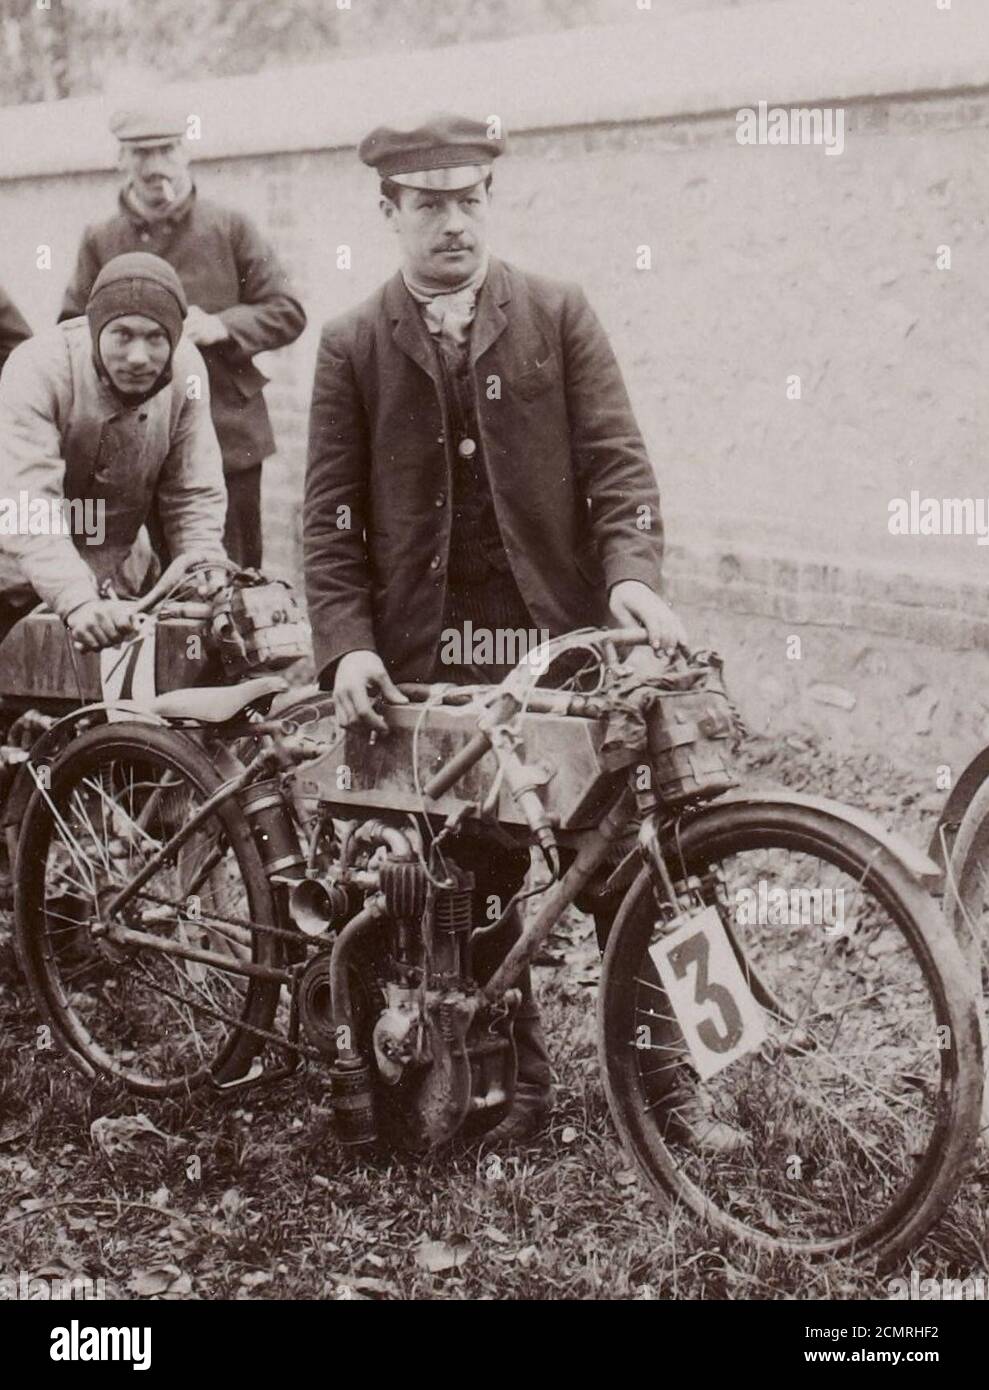 Joseph Collomb vainqueur sur Magali de la catégorie Motocicletas de litro, à la côte de Gaillon 1904. Foto de stock